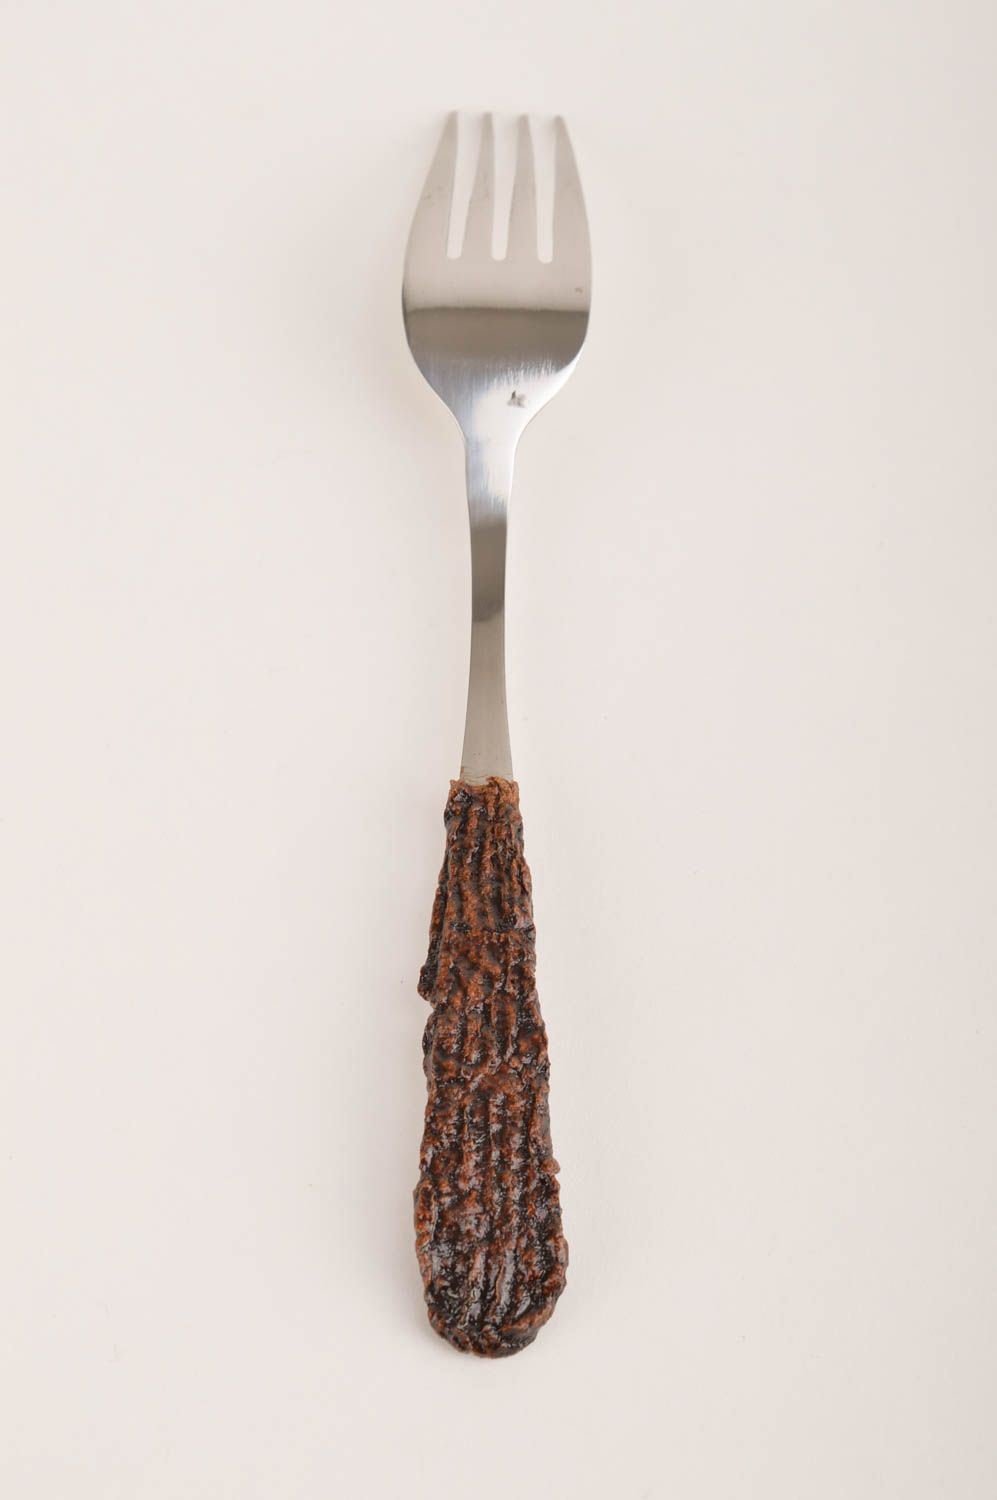 Handmade fork designer spork metal cutlery designer kitchen utensils gift ideas photo 4